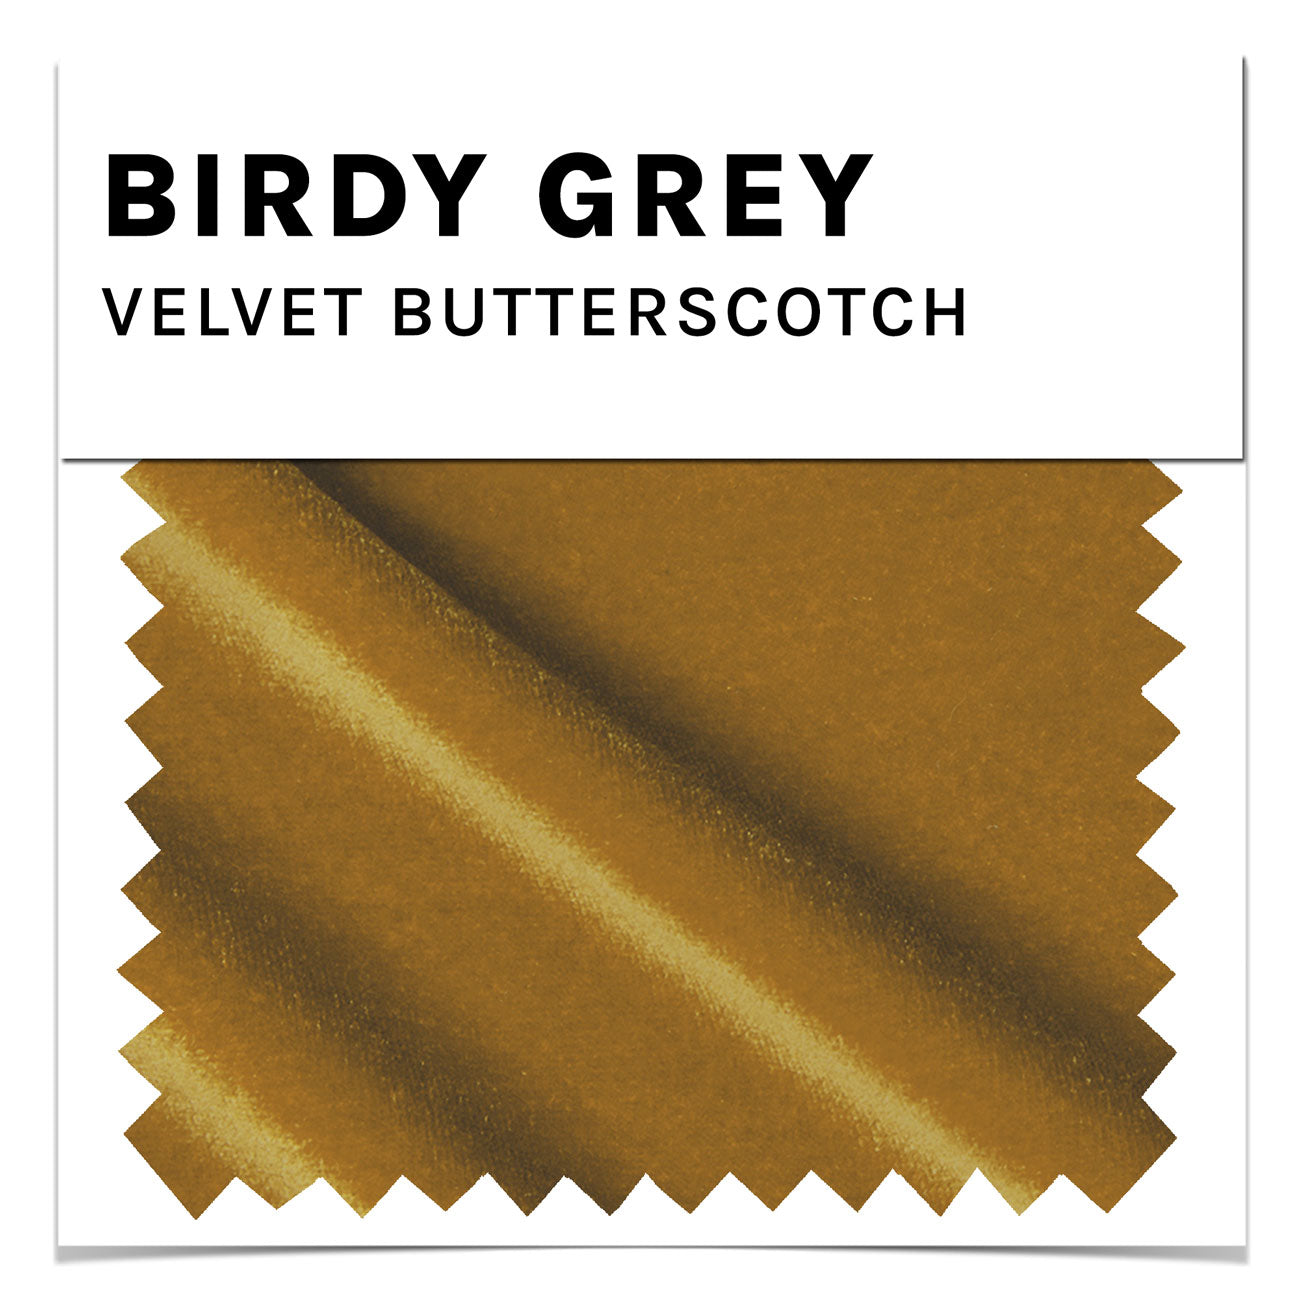 Butterscotch Velvet Swatch by Birdy Grey